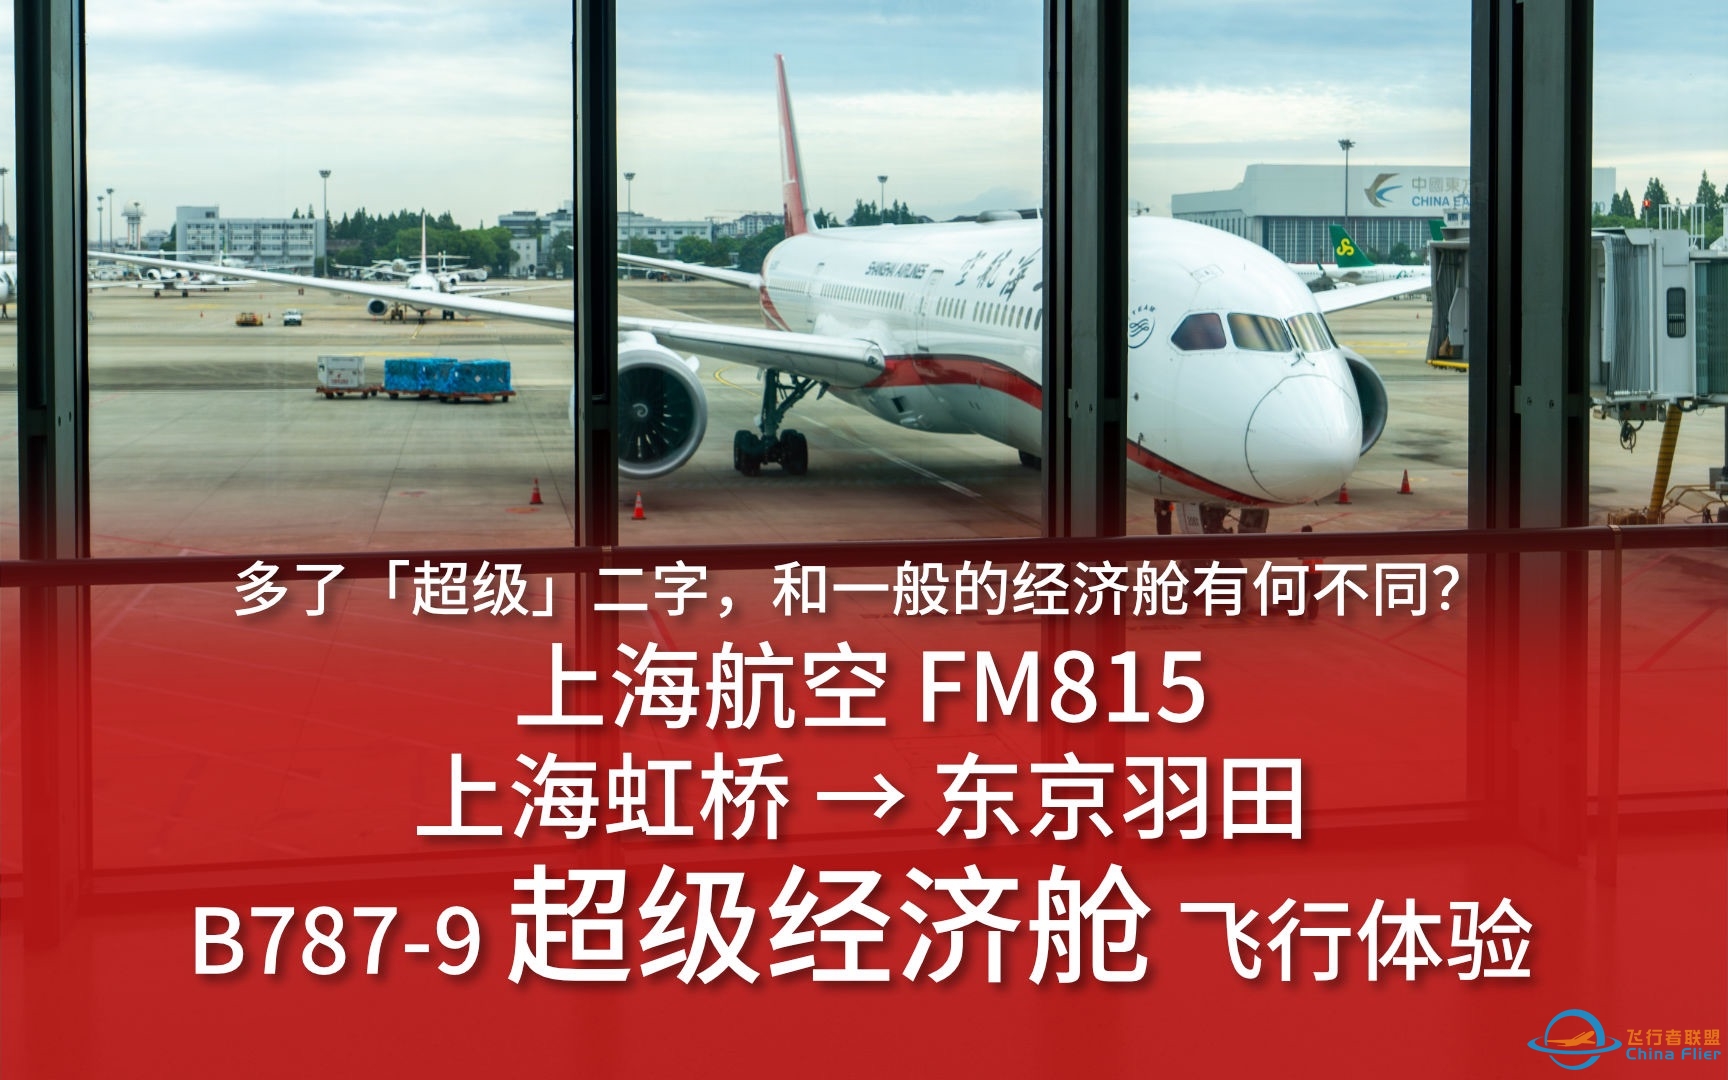 【航空vlog】多了超级二字 和一般的经济舱有何不同？上海航空FM815 上海虹桥→东京羽田 B787-9超级经济舱飞行体验-2155 